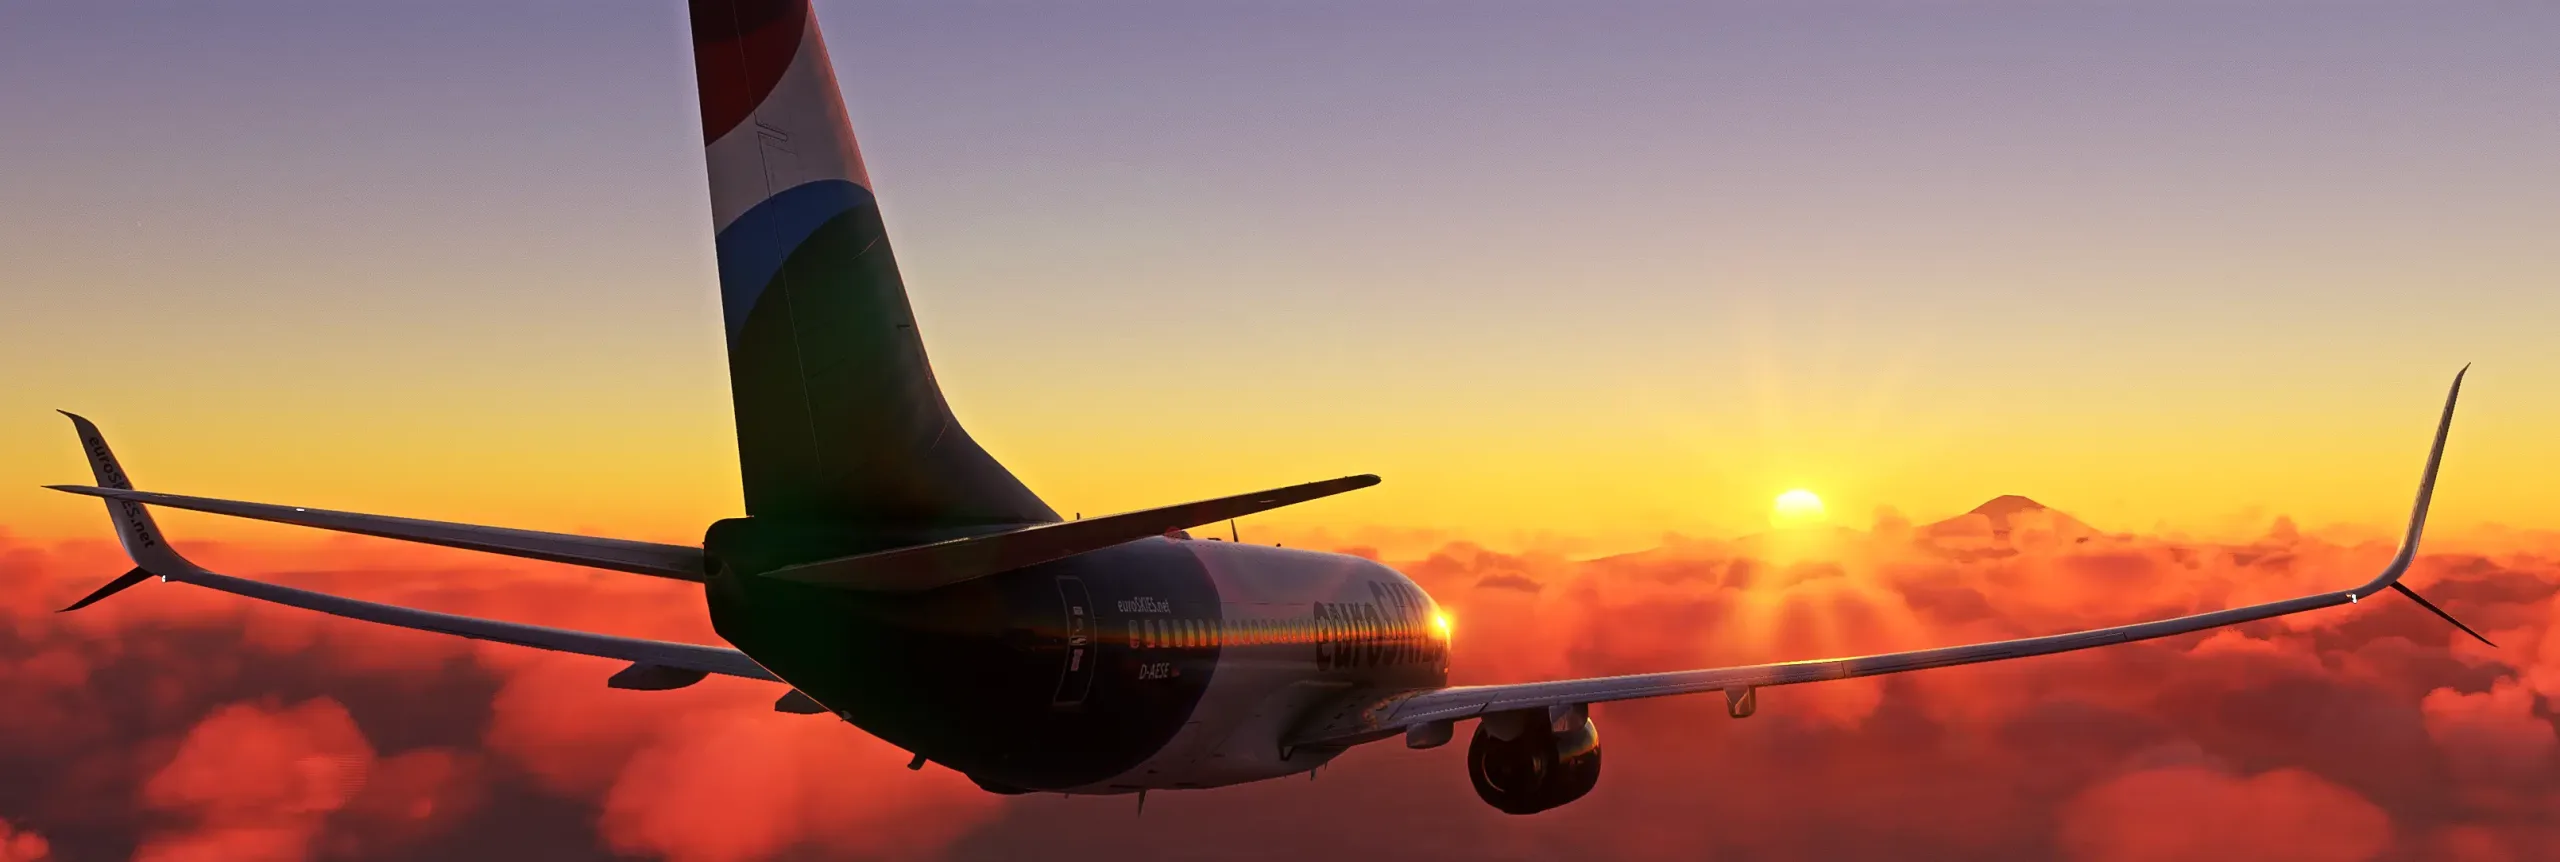 euroSKIES virtuelle Airline Boeing 737-800 fliegt in Richtung Teneriffa während Sonnenuntergangs.